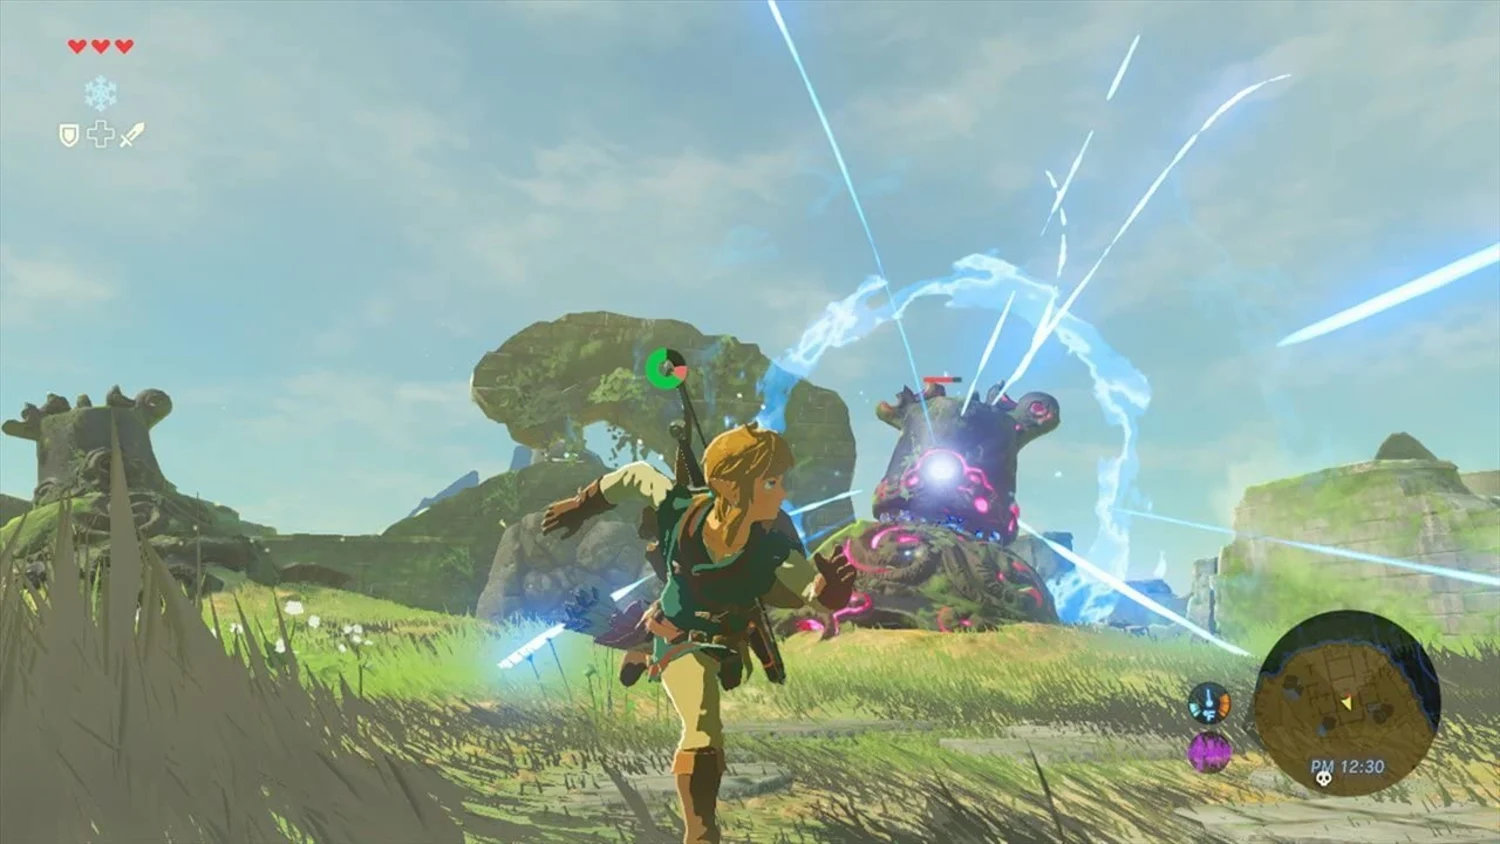 The Legend of Zelda Breath of the Wild Jogos Nintendo Switch Mídia Física  Novo (com Inglês) - Desconto no Preço